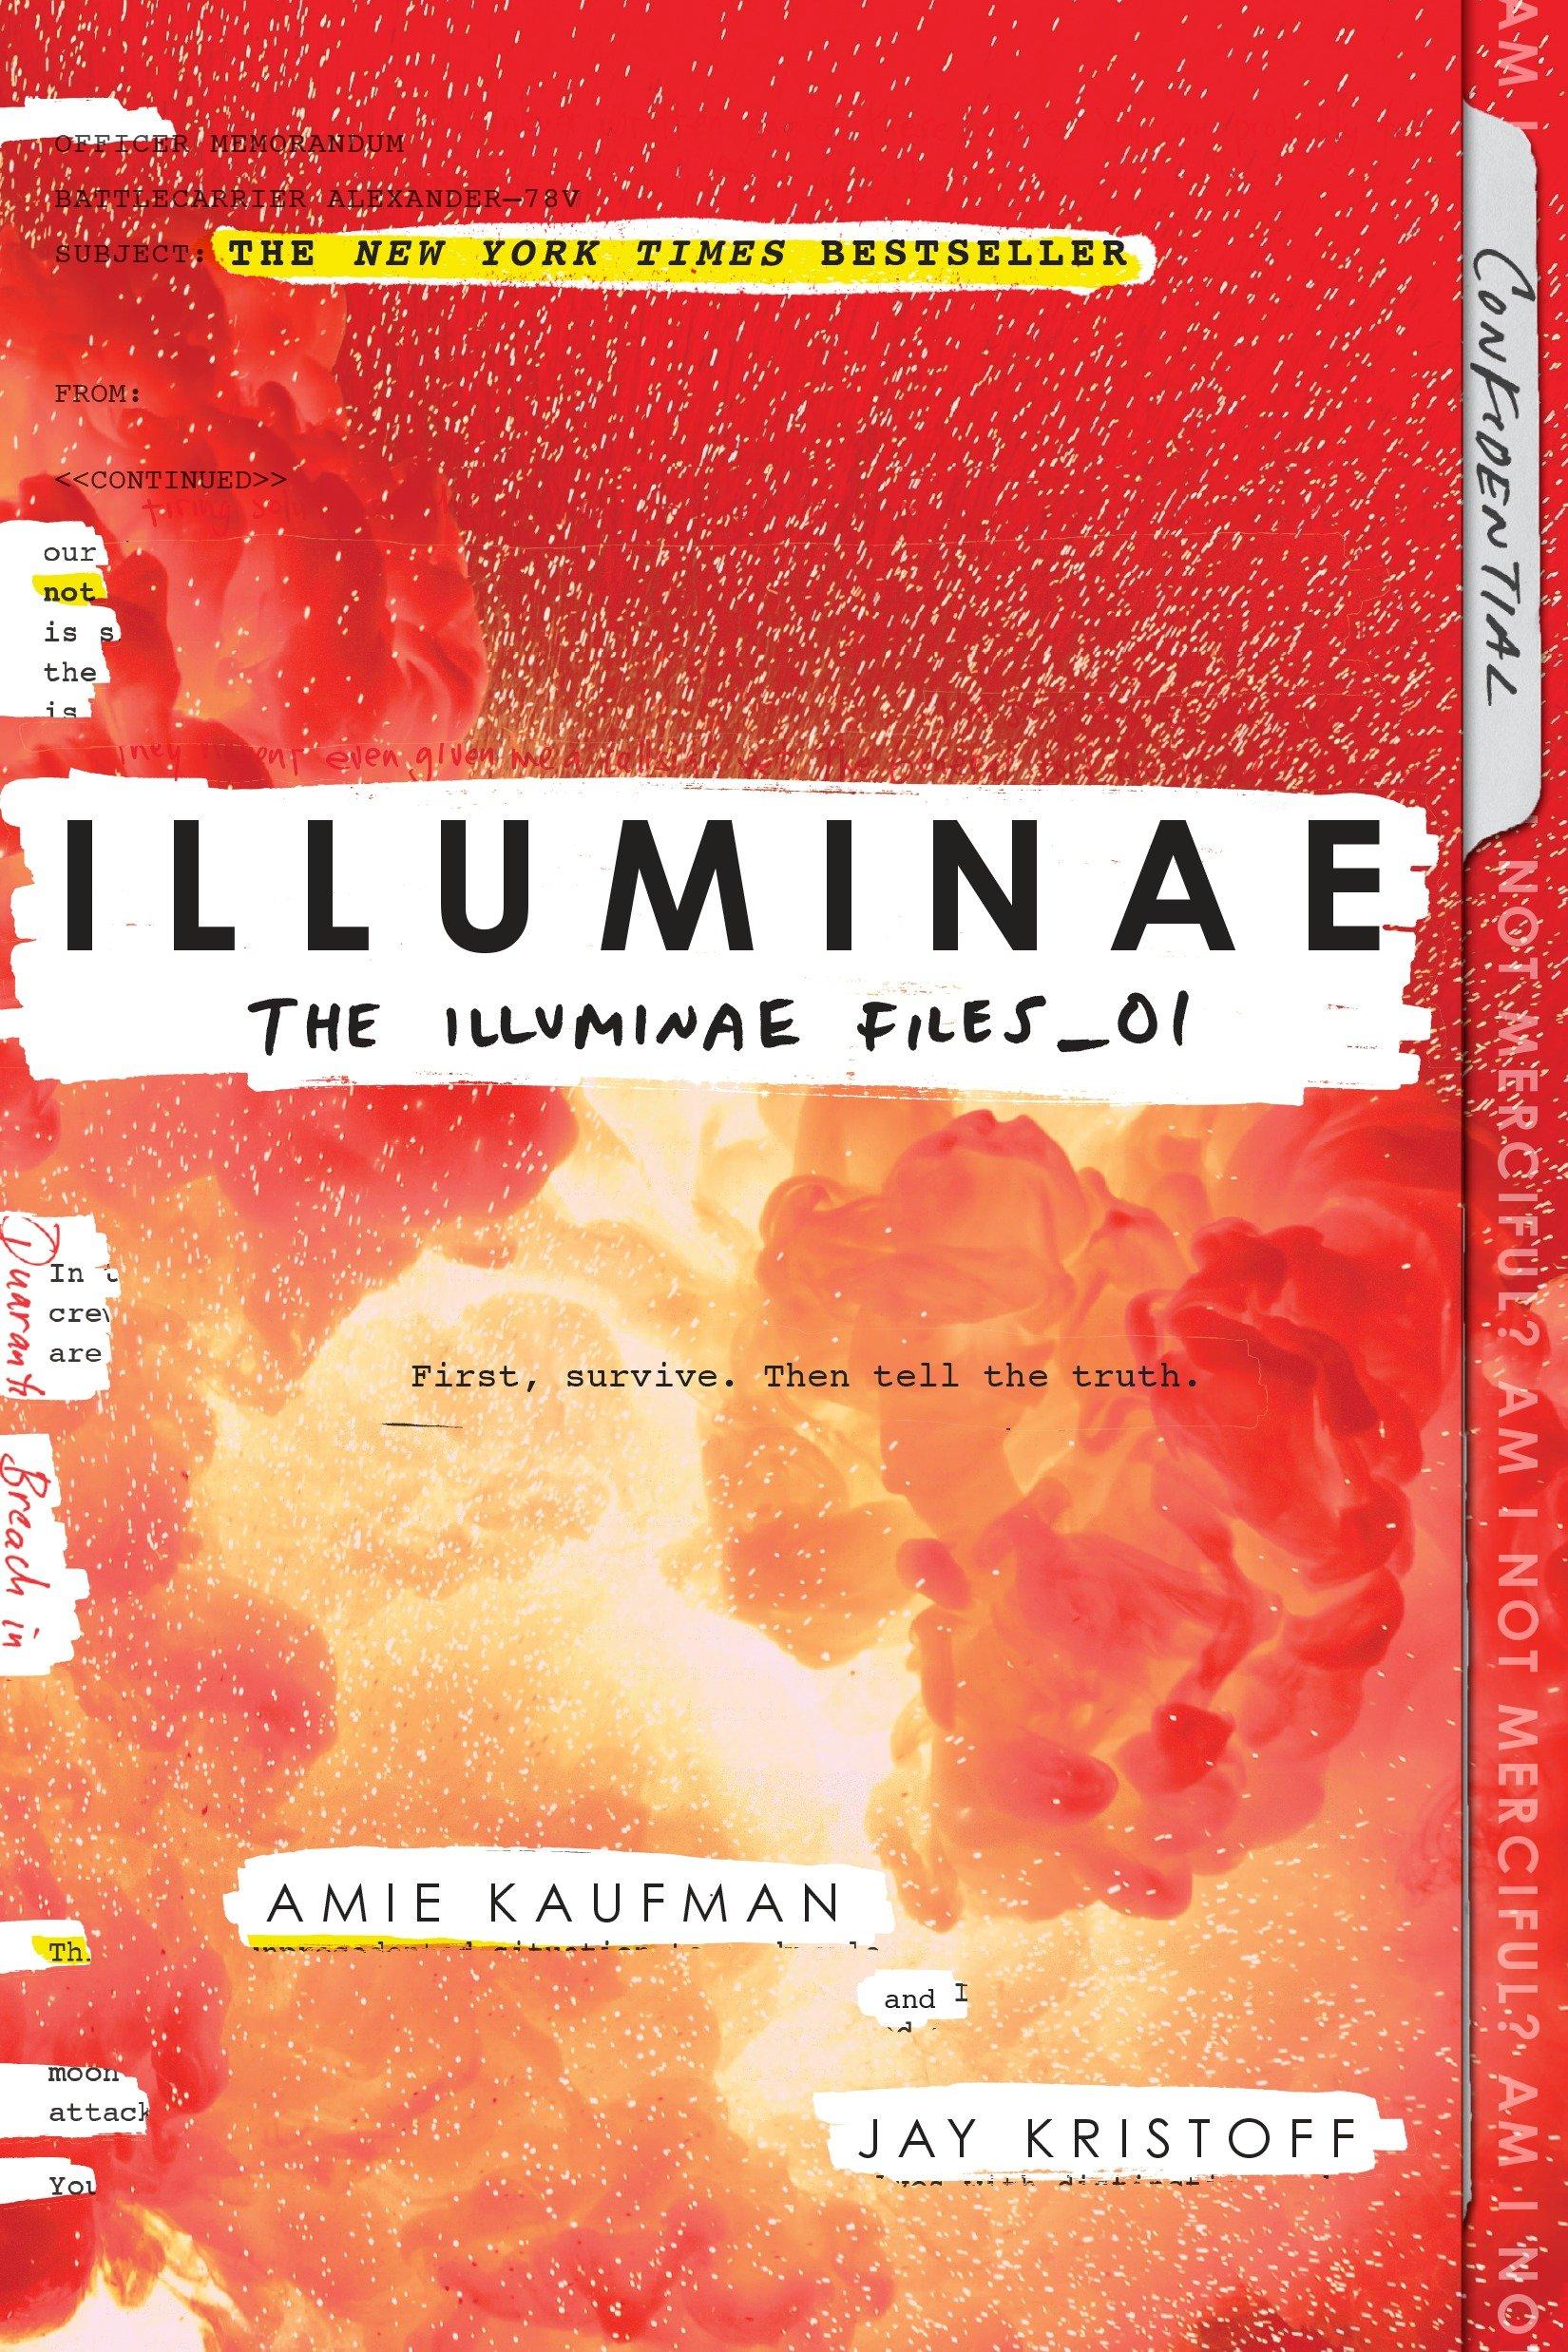 Amie Kaufman, Jay Kristoff, abc: Illuminae (The Illuminae Files, #1) (Paperback, 2015, Allen & Unwin)